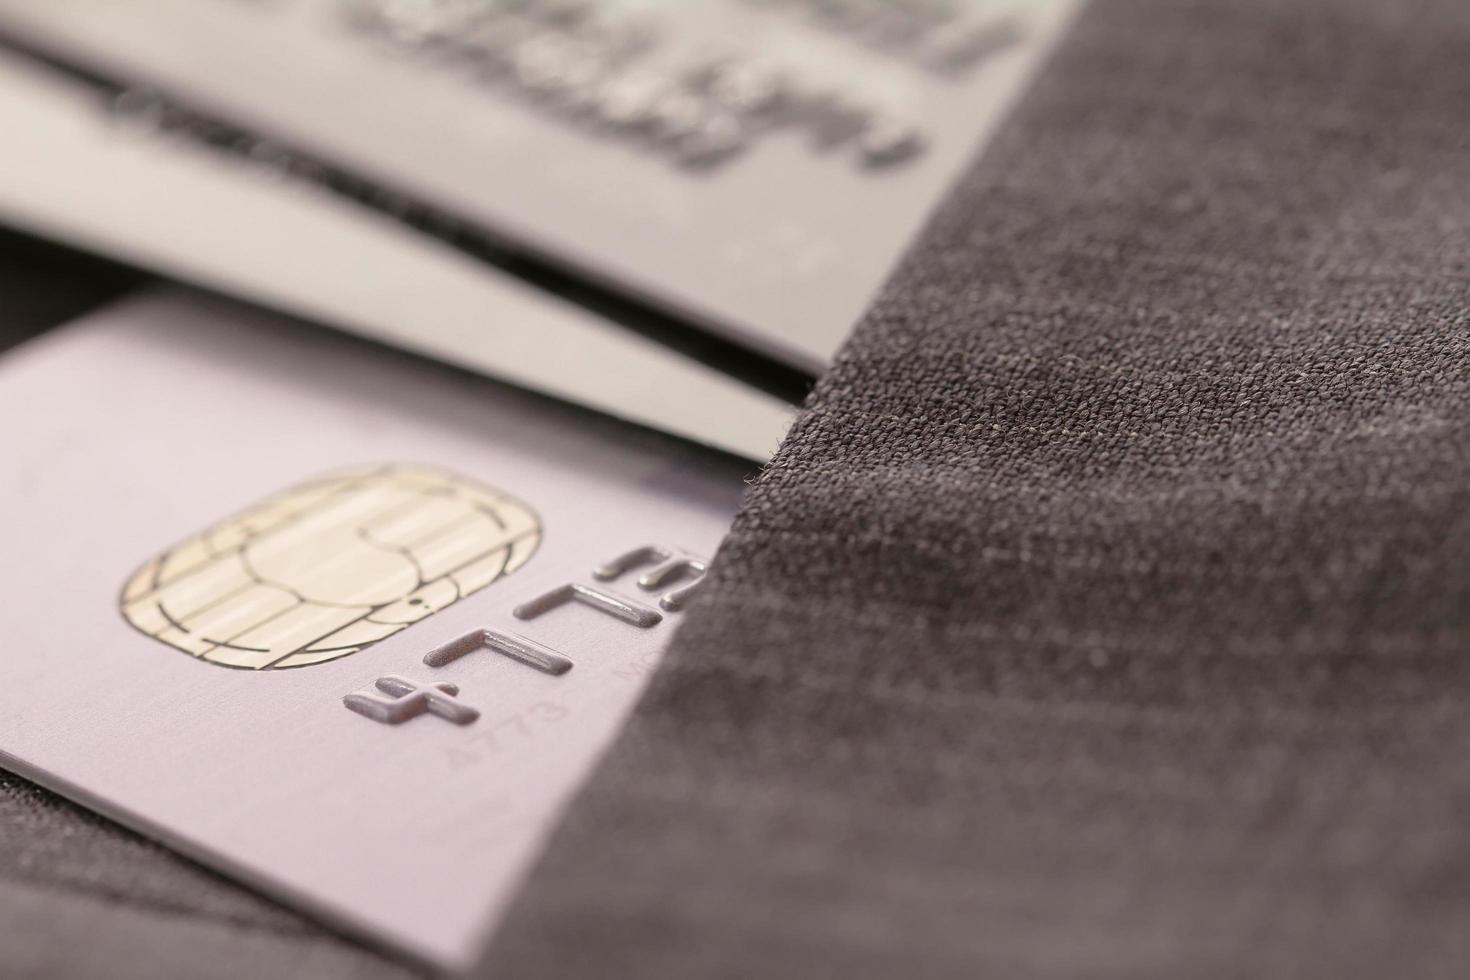 kreditkort i mycket grunt fokus med grå färg bakgrund foto